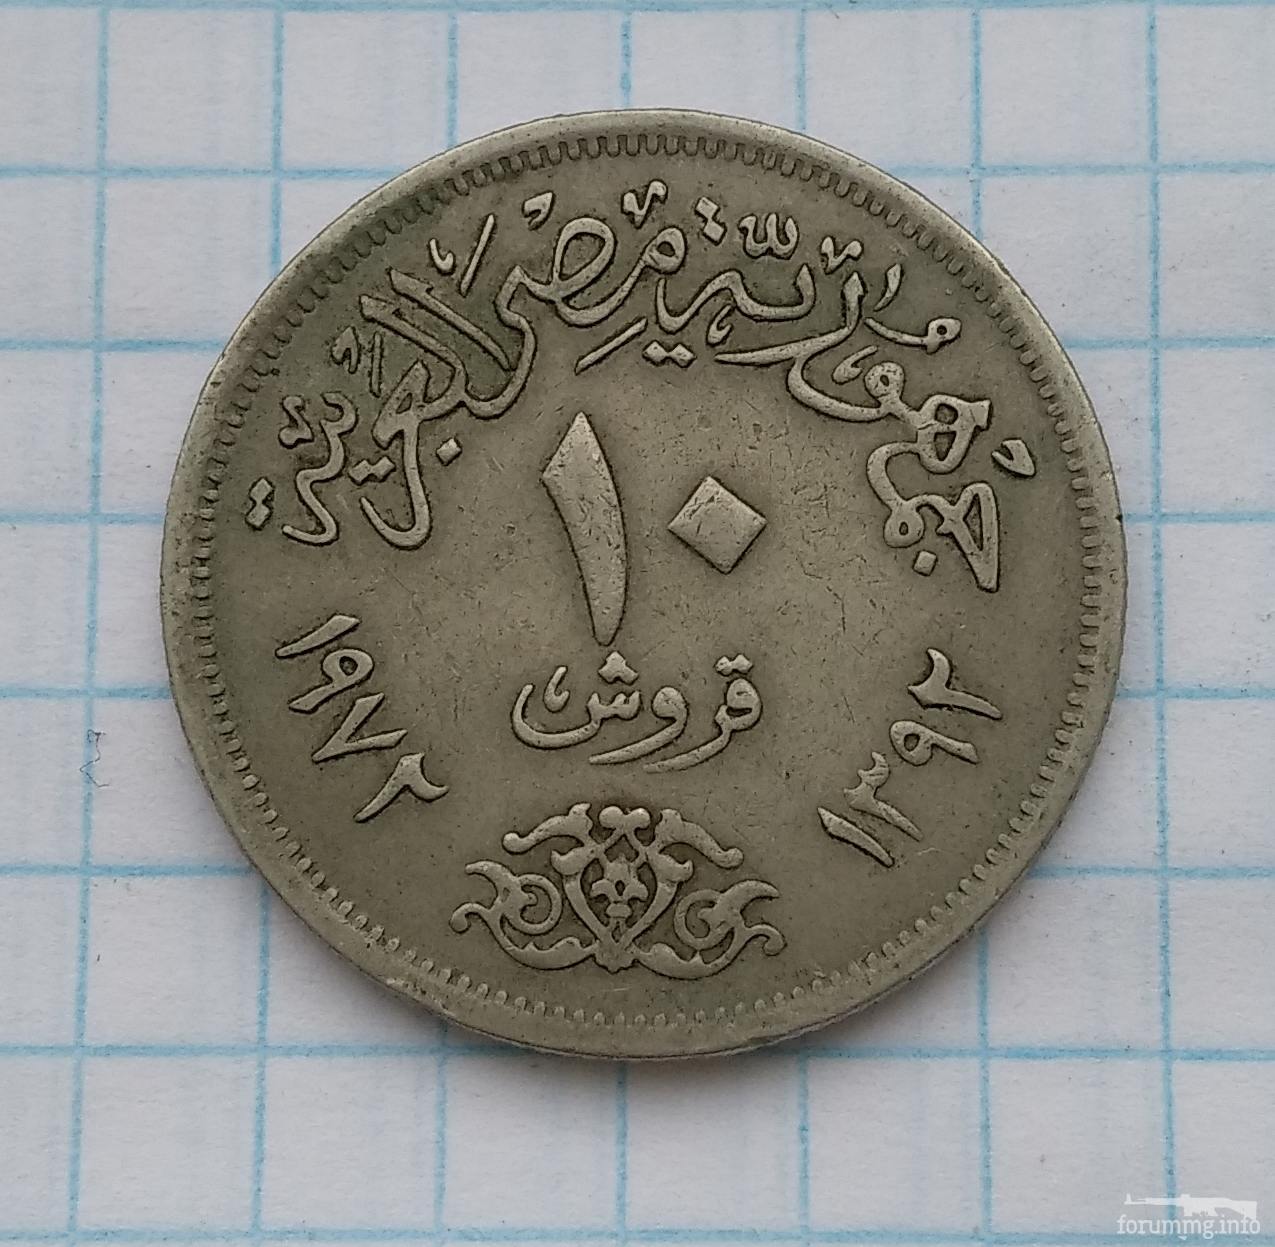 145801 - Монети Єгипту, подарунковий набір.